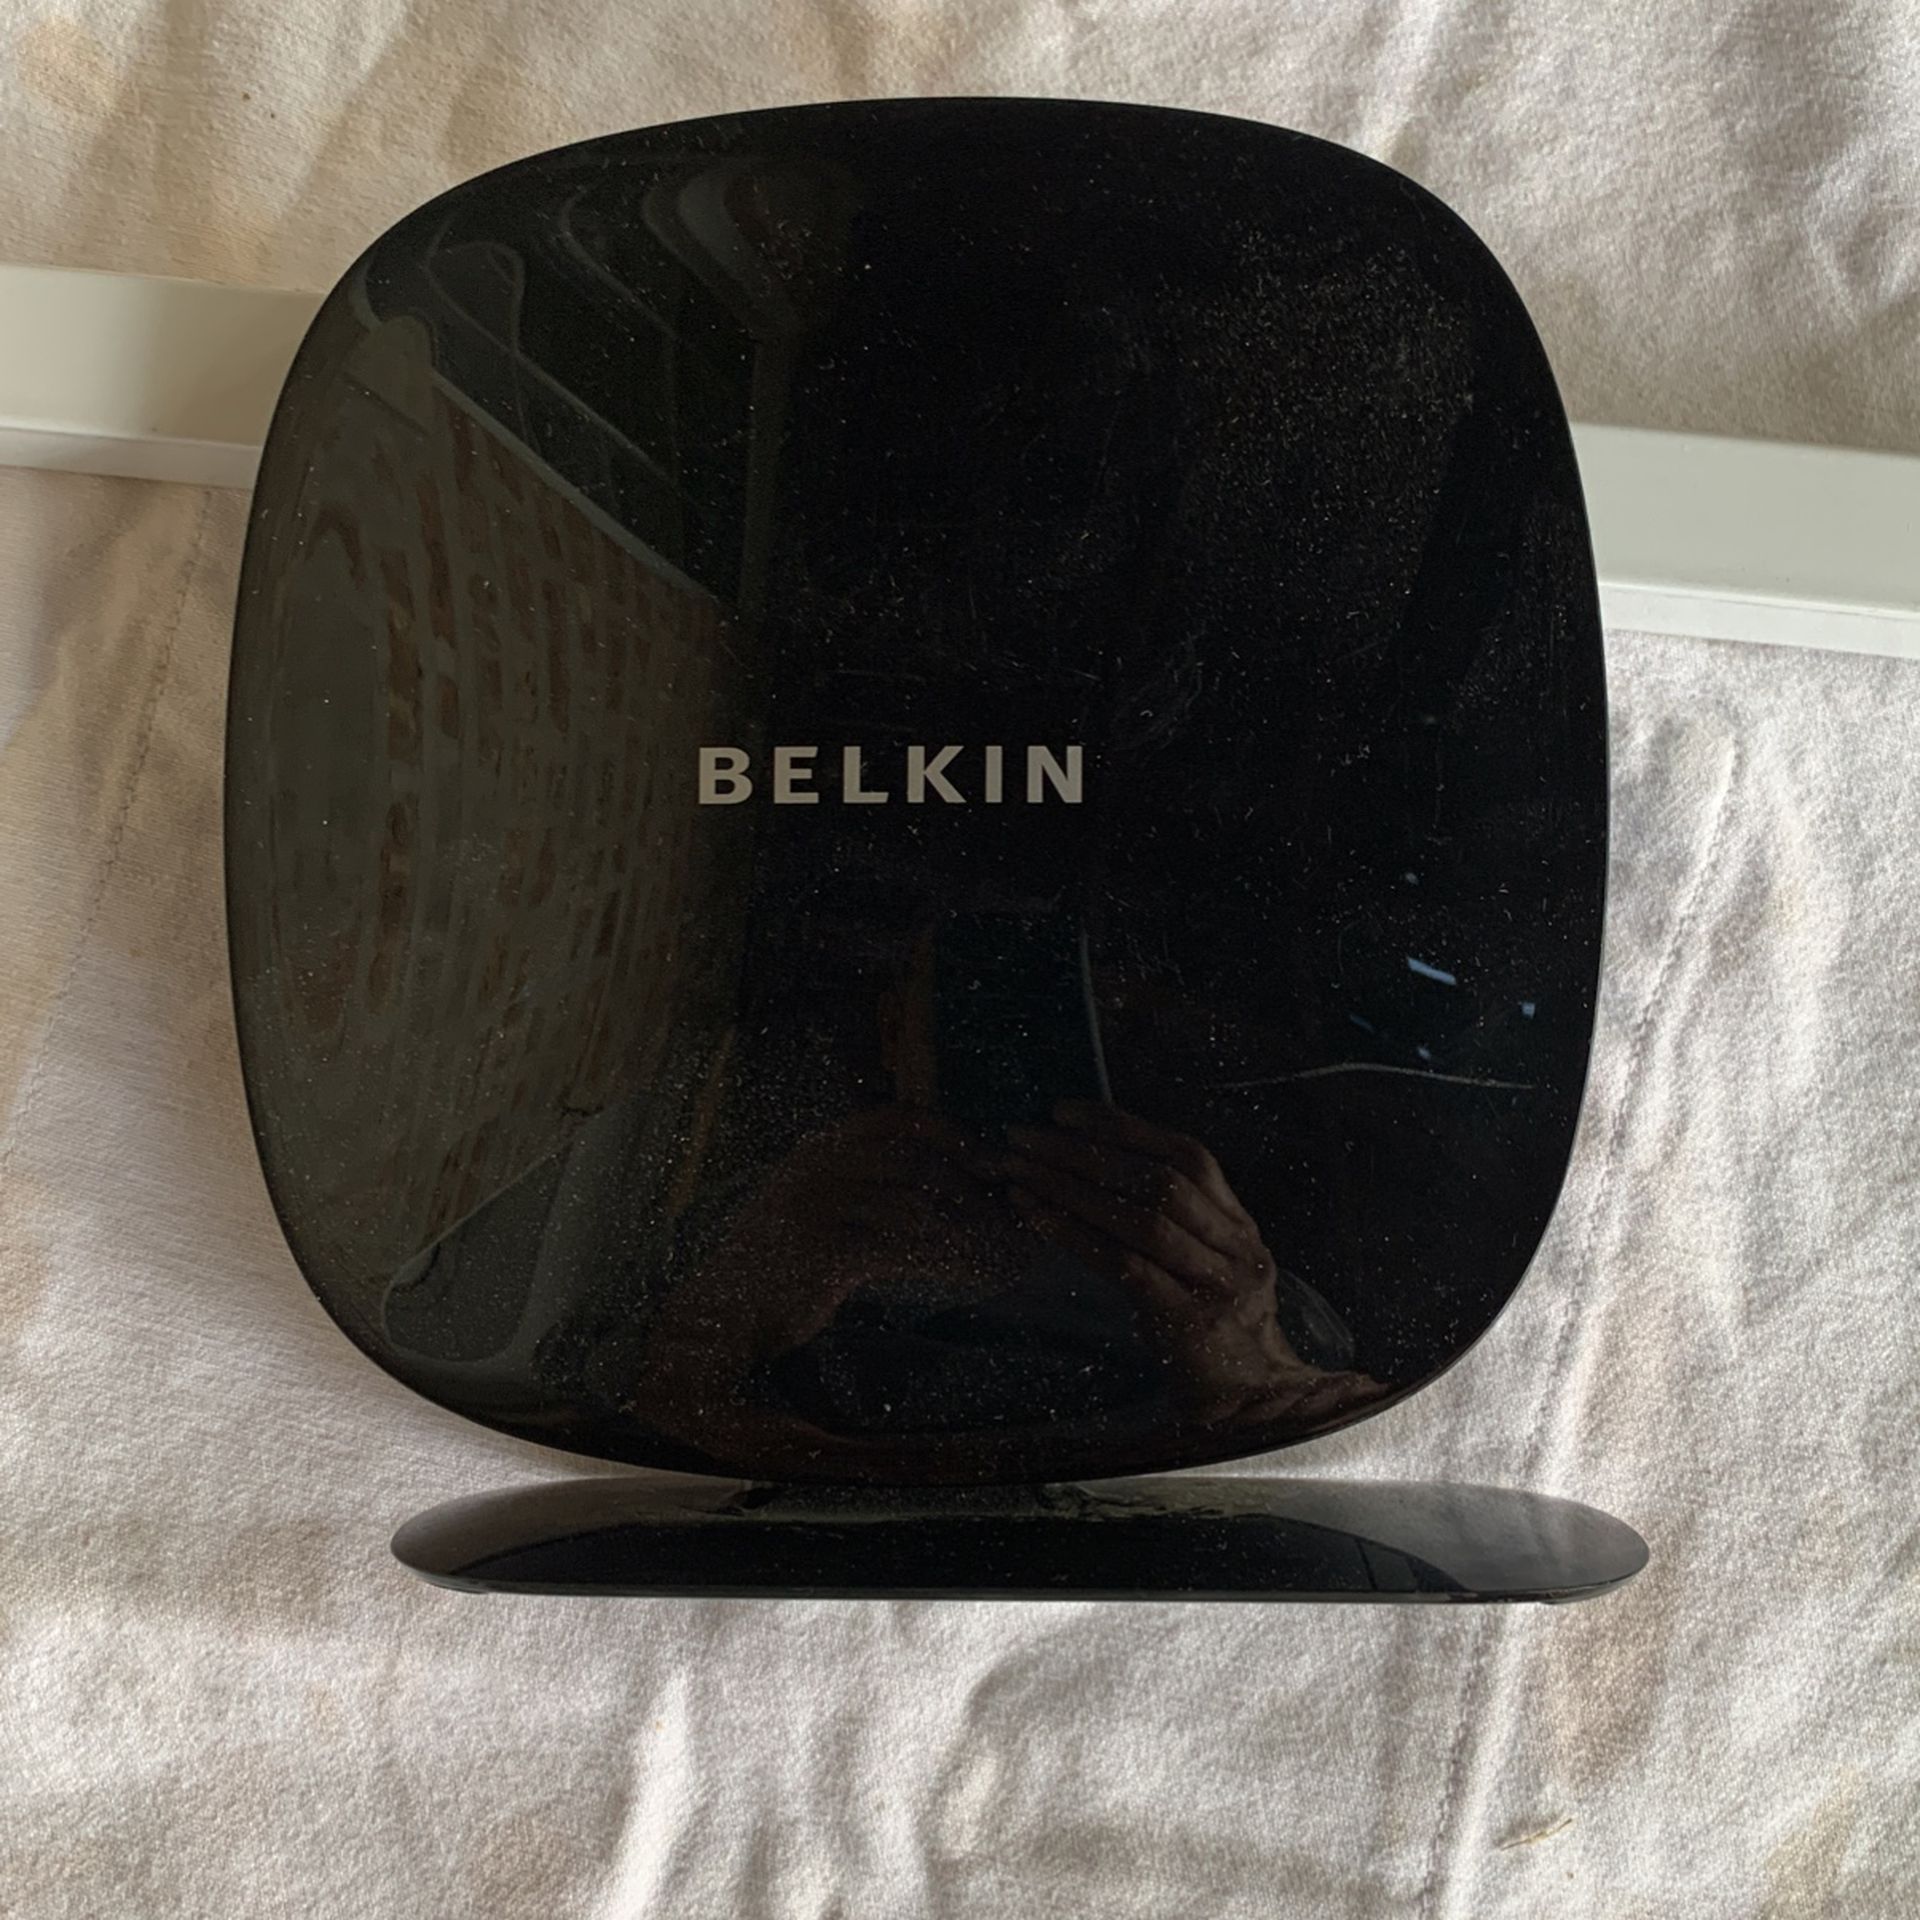 Belkin N600 DB Wireless N+ Router Model F9K1102v1